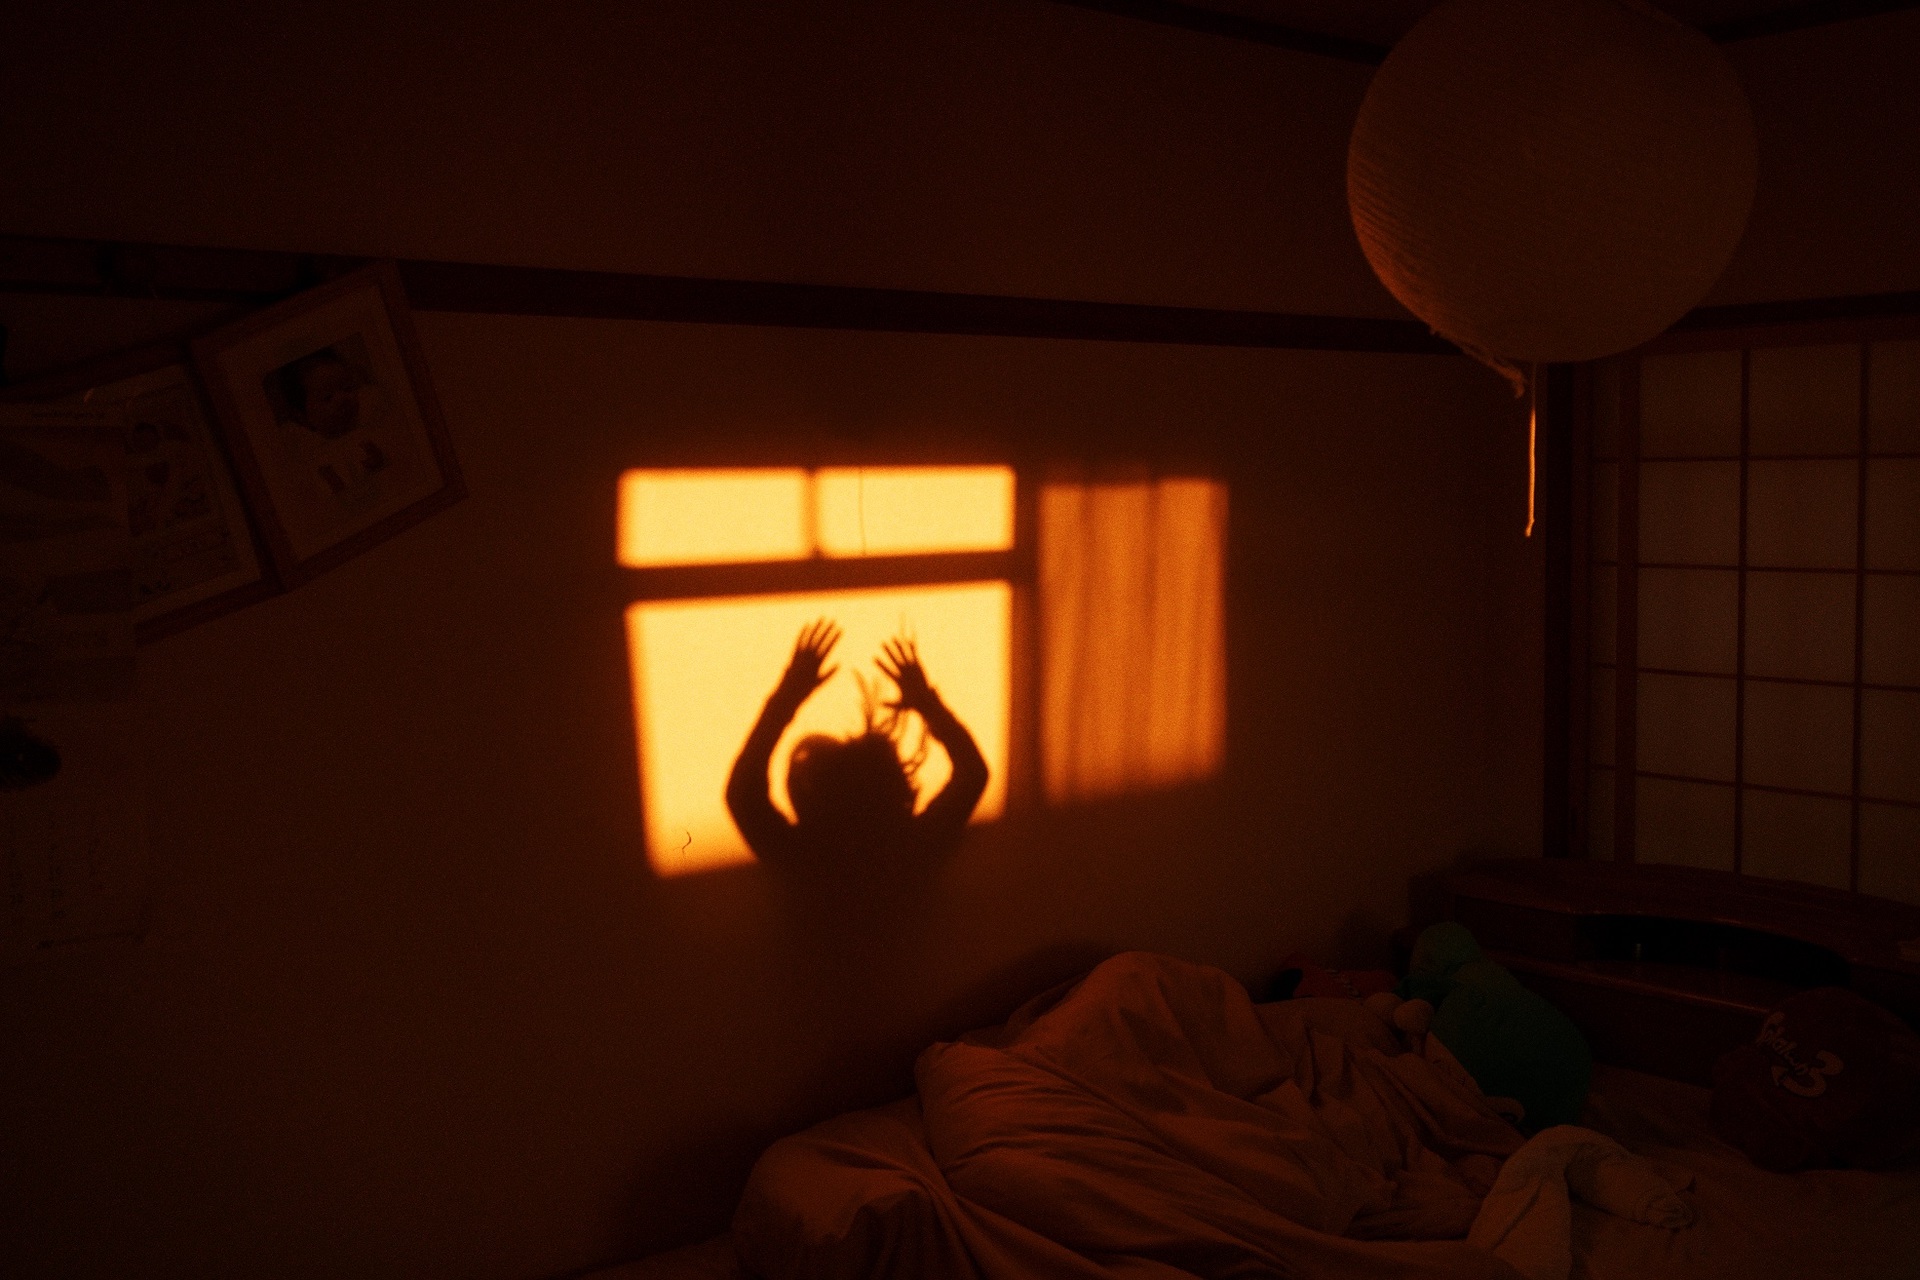 Jun Aihara FUJIFILM X100F撮影の壁に映る人のシルエット